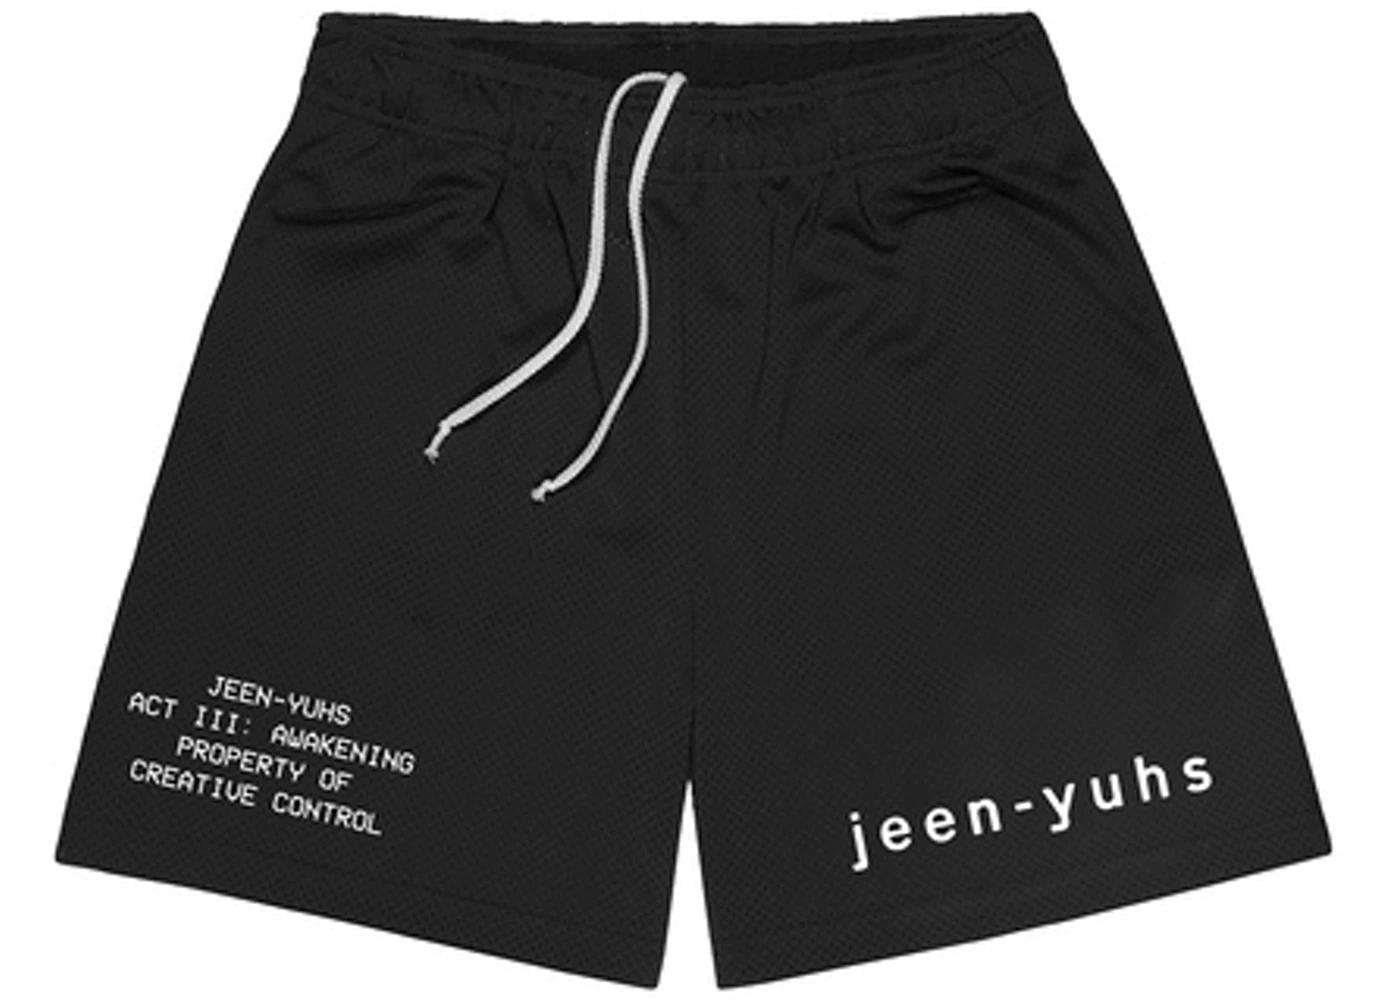 Jeen-Yuhs Shorts Black by BRAVEST STUDIOS